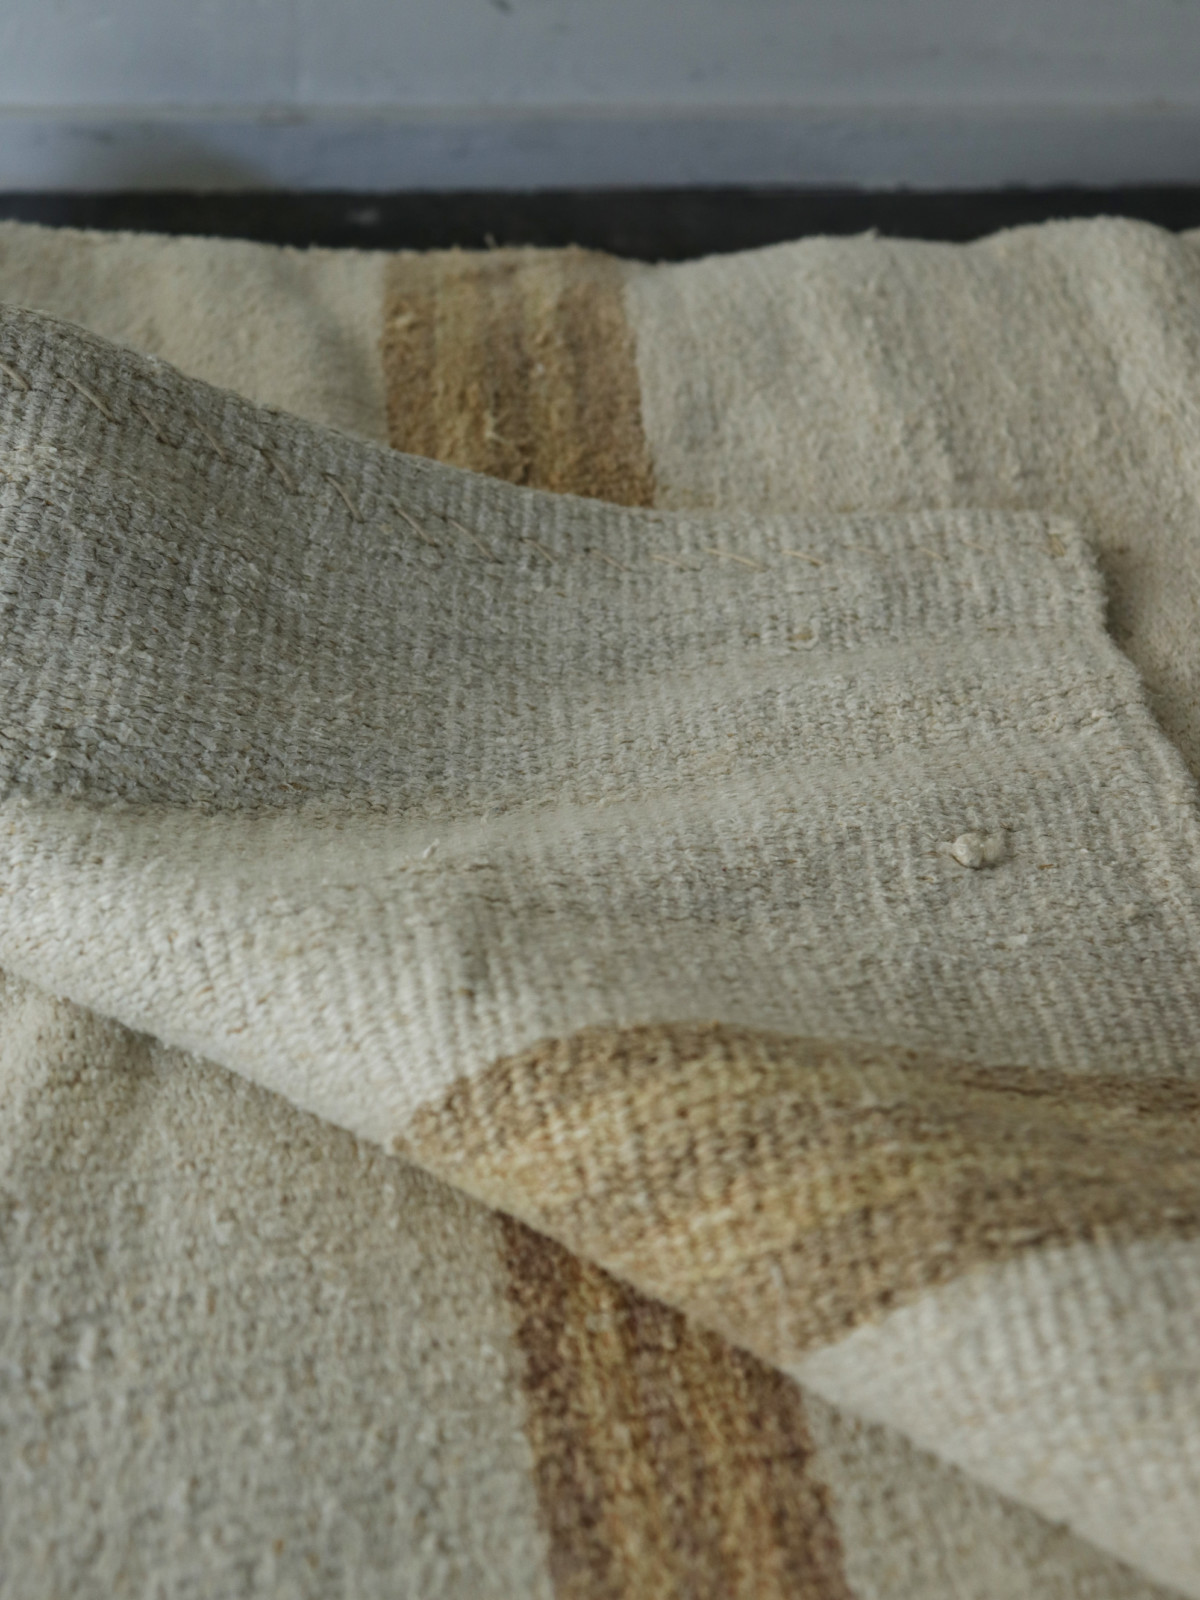 Hungary, Grain sack fabric, linen rug